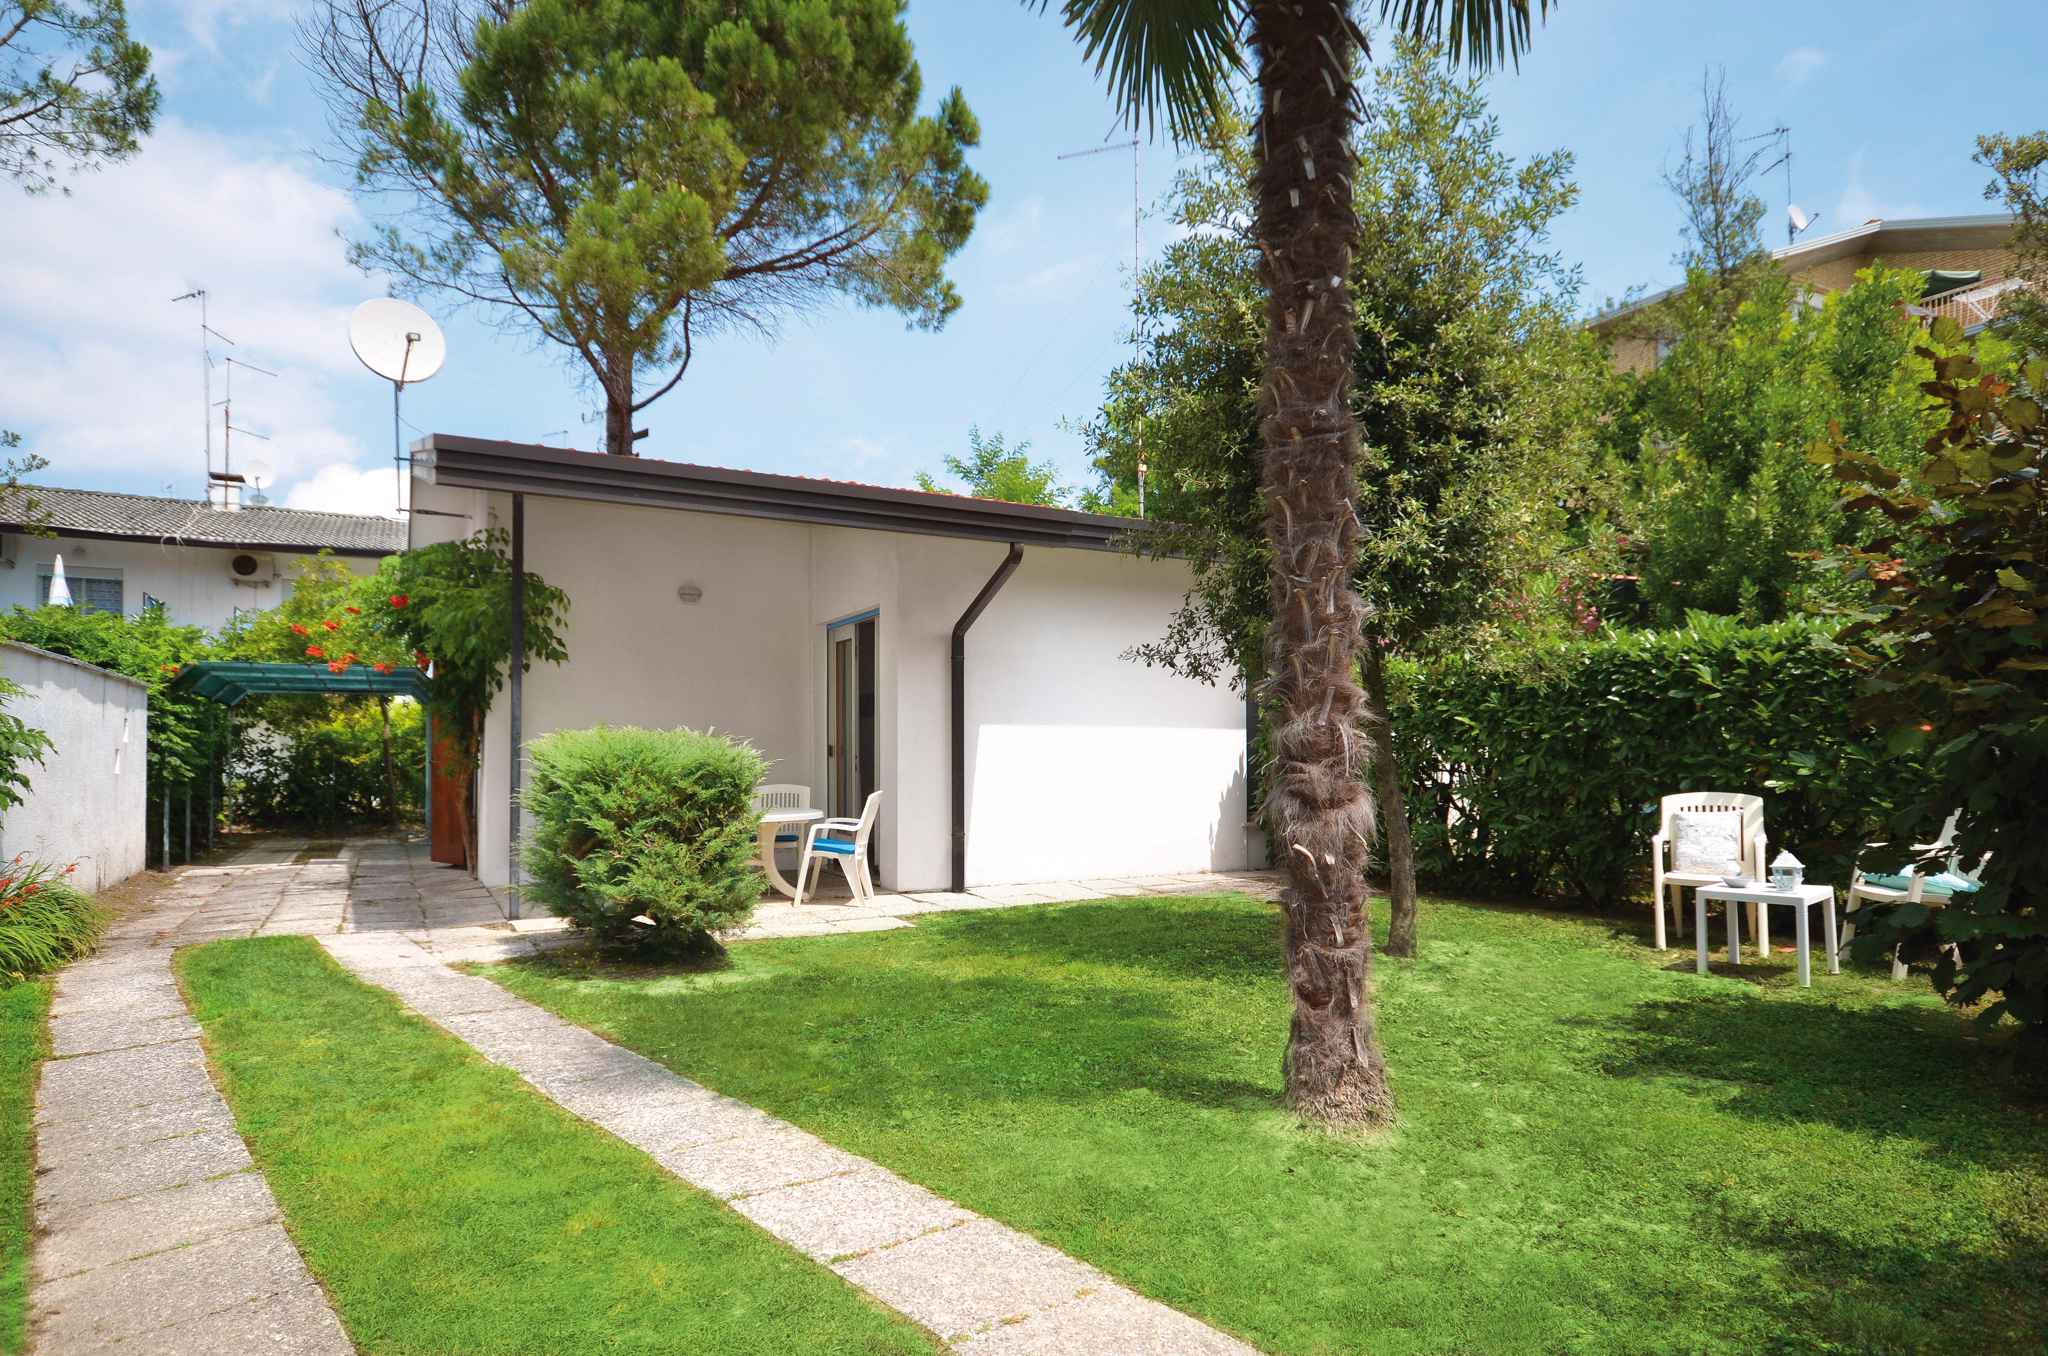 Villa in ruhiger Lage mit Garten inkl. Strandservi Ferienhaus in Italien